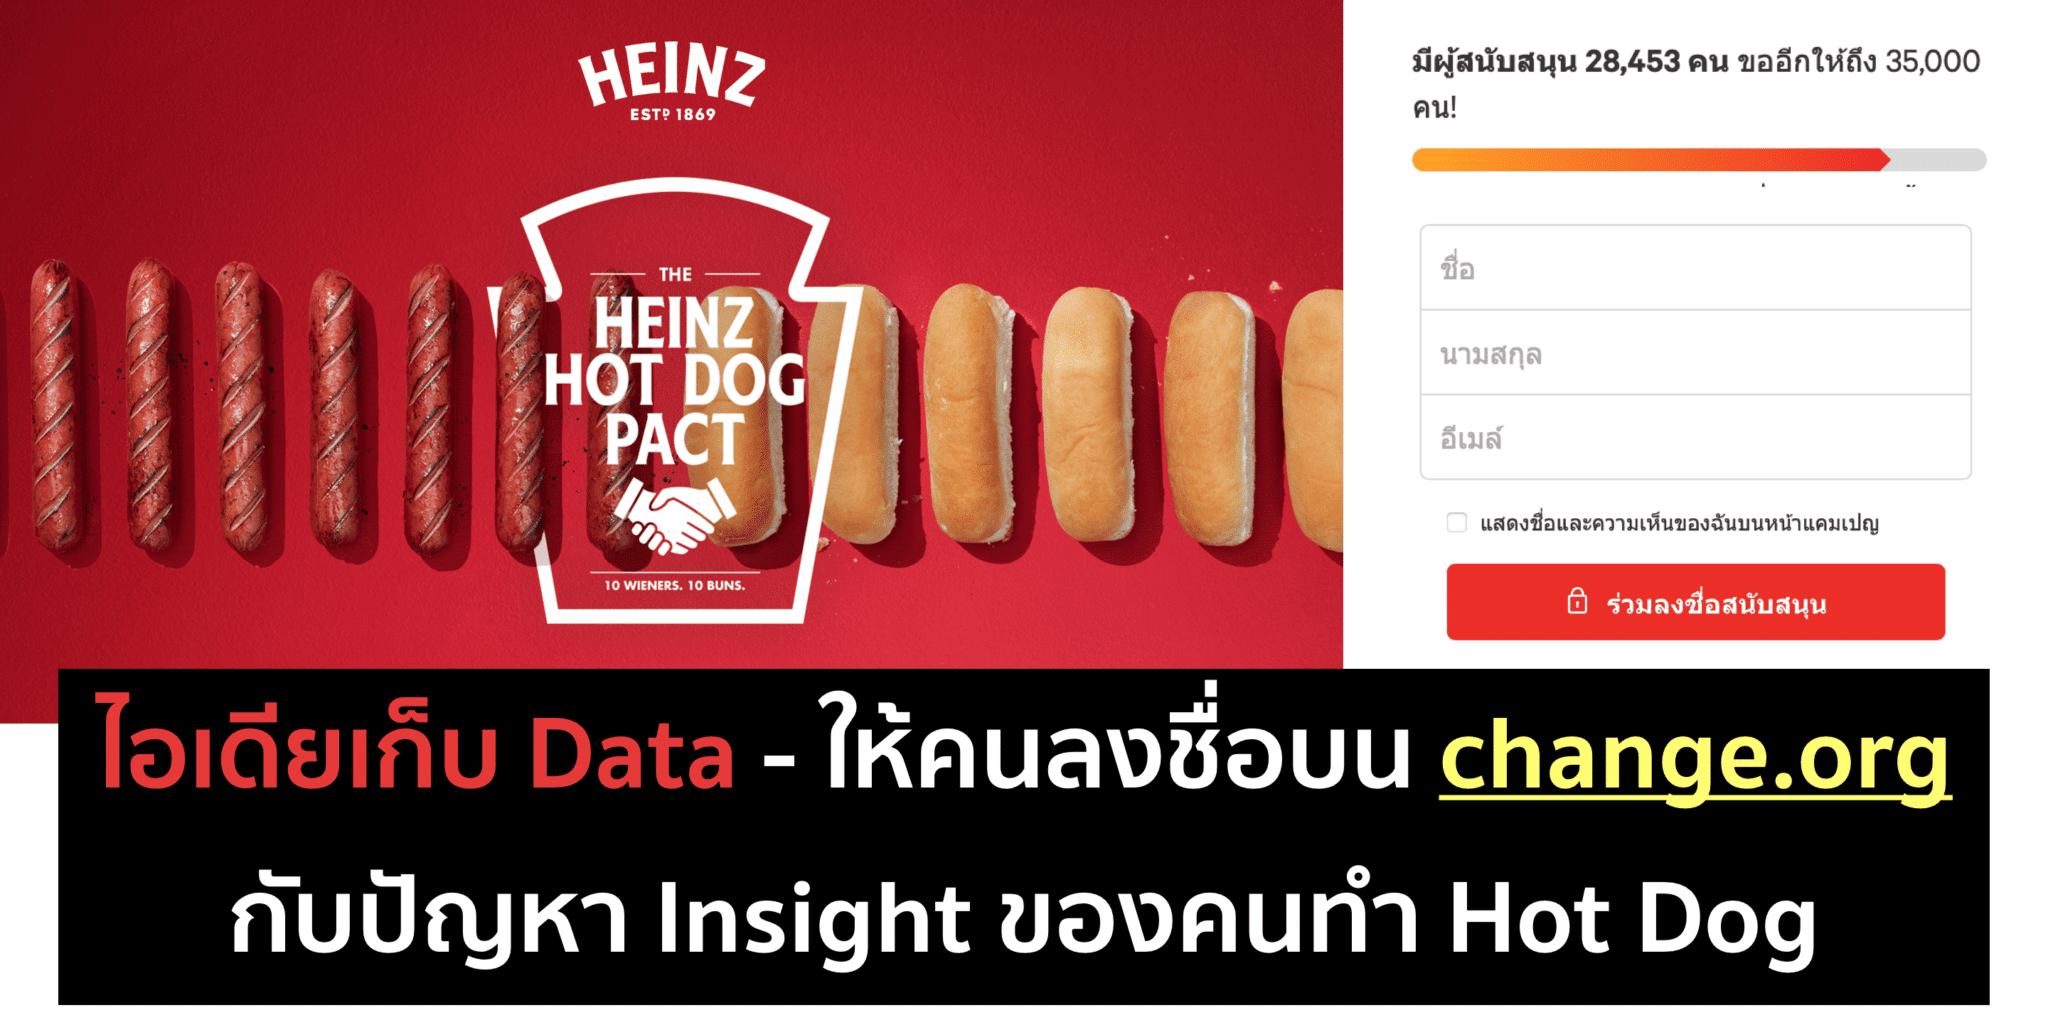 ไอเดียเก็บ Data ชวนคนลงชื่อด้วย Pain Point ง่ายๆ จาก Heinz